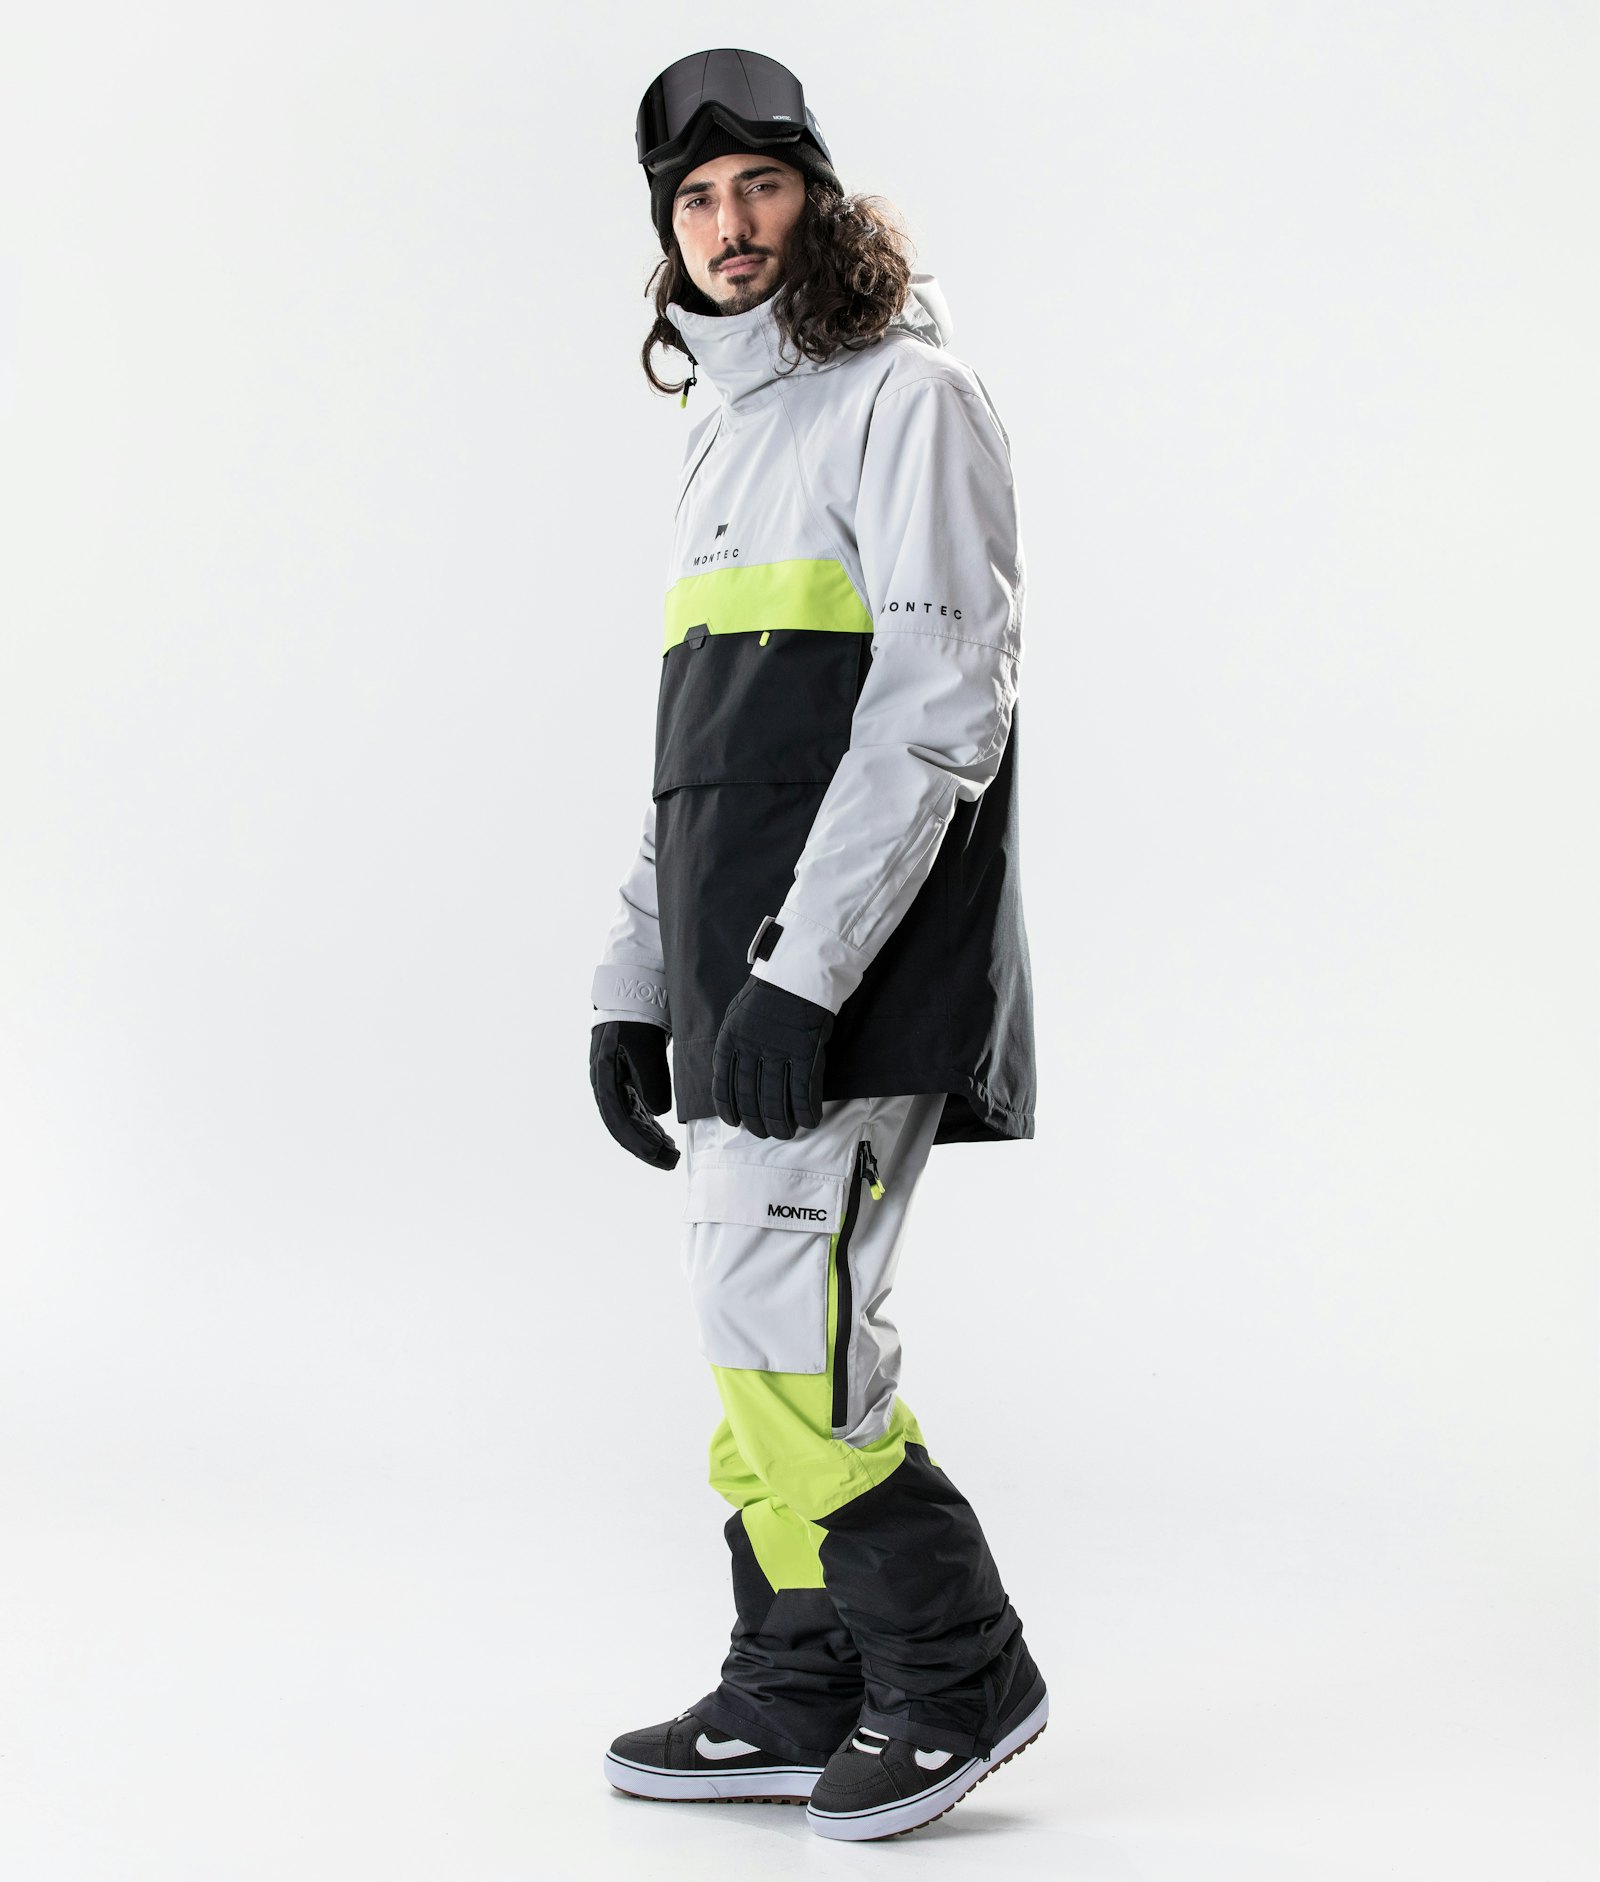 Dune 2020 Veste Snowboard Homme Light Grey/Neon Yellow/Black